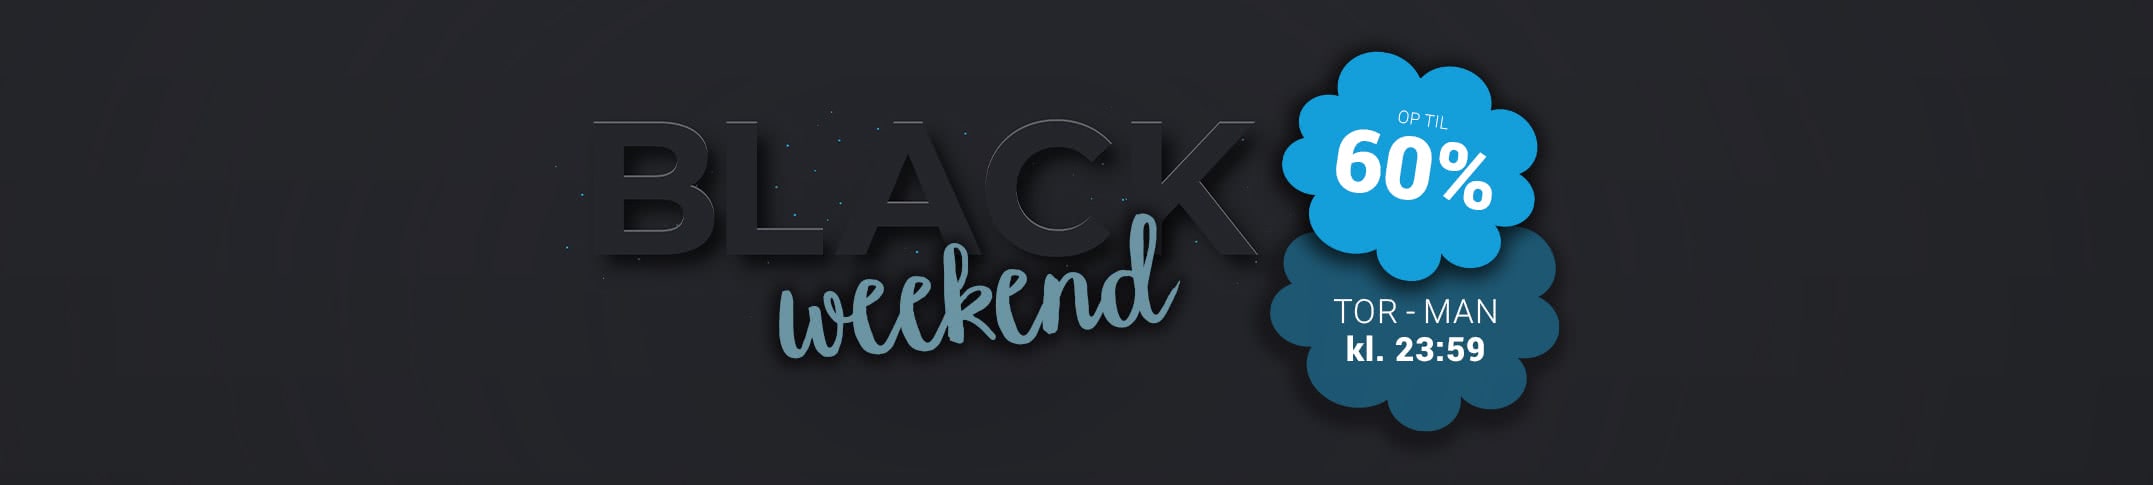 Black-Weekend